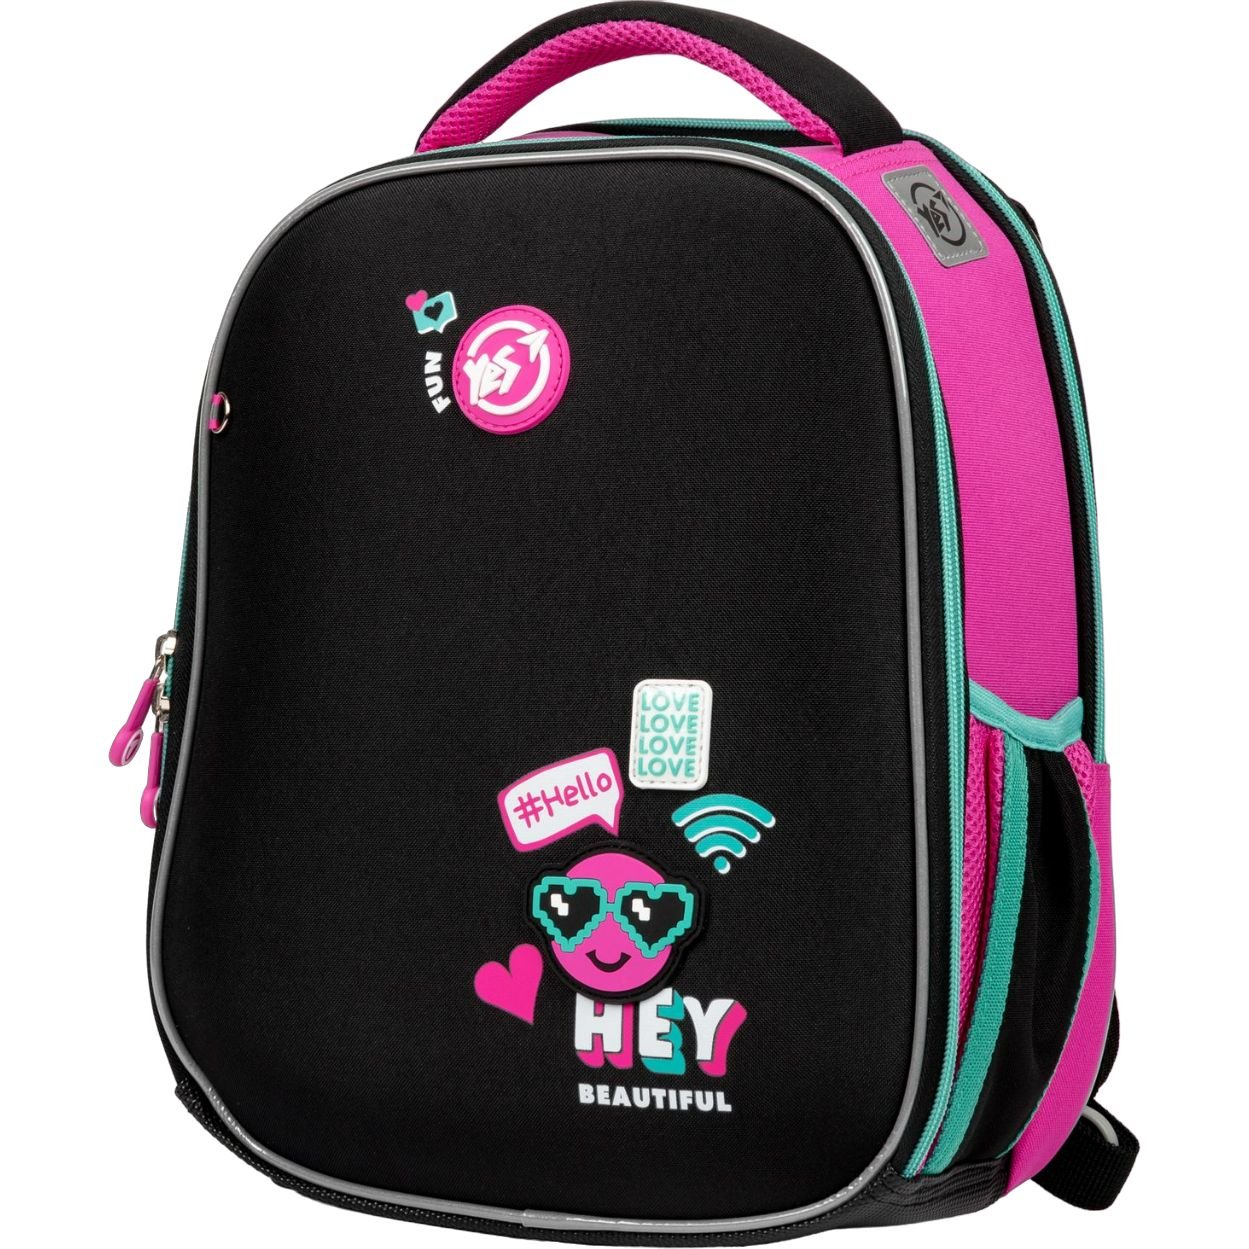 Фото - Шкільний рюкзак (ранець) Yes Рюкзак каркасний  H-100 Lovely Smile, чорний з малиновим  (559378)